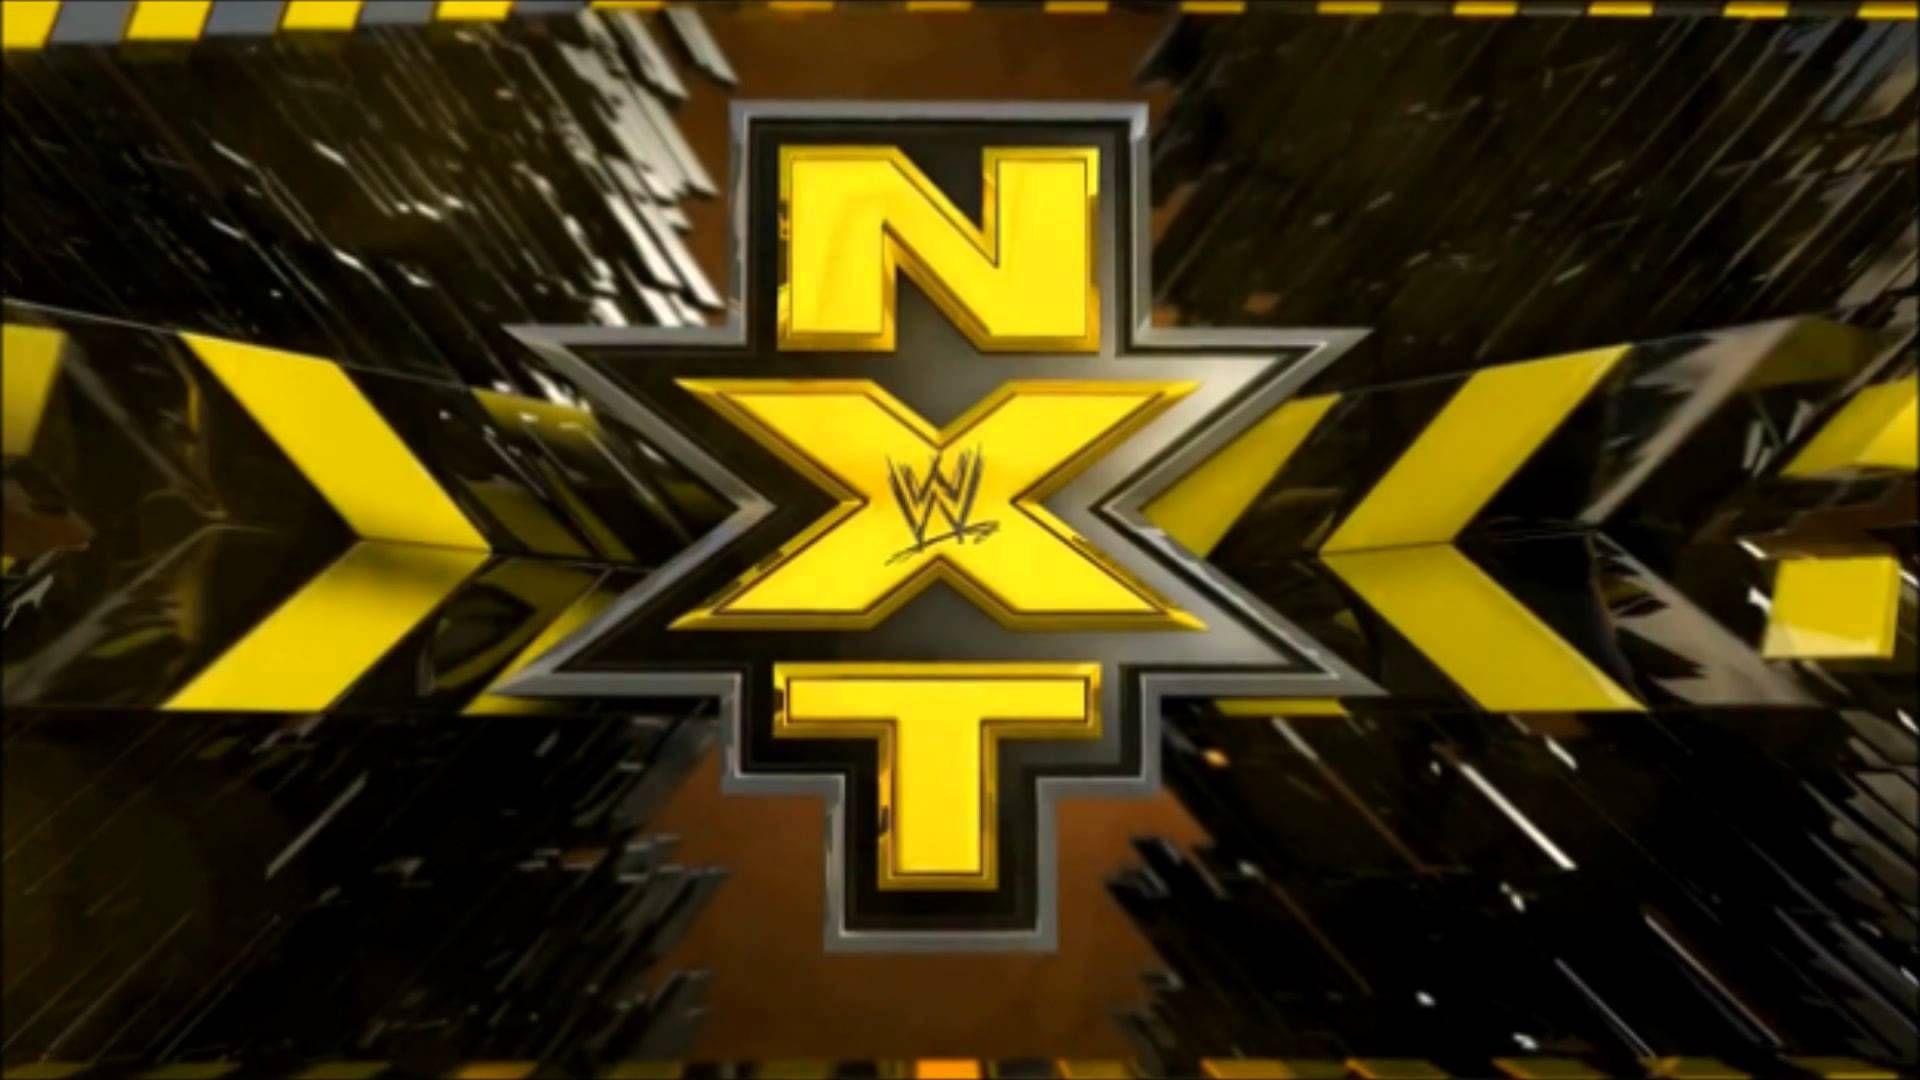 WWE NXT Wallpaper: Find best latest WWE NXT Wallpaper in HD